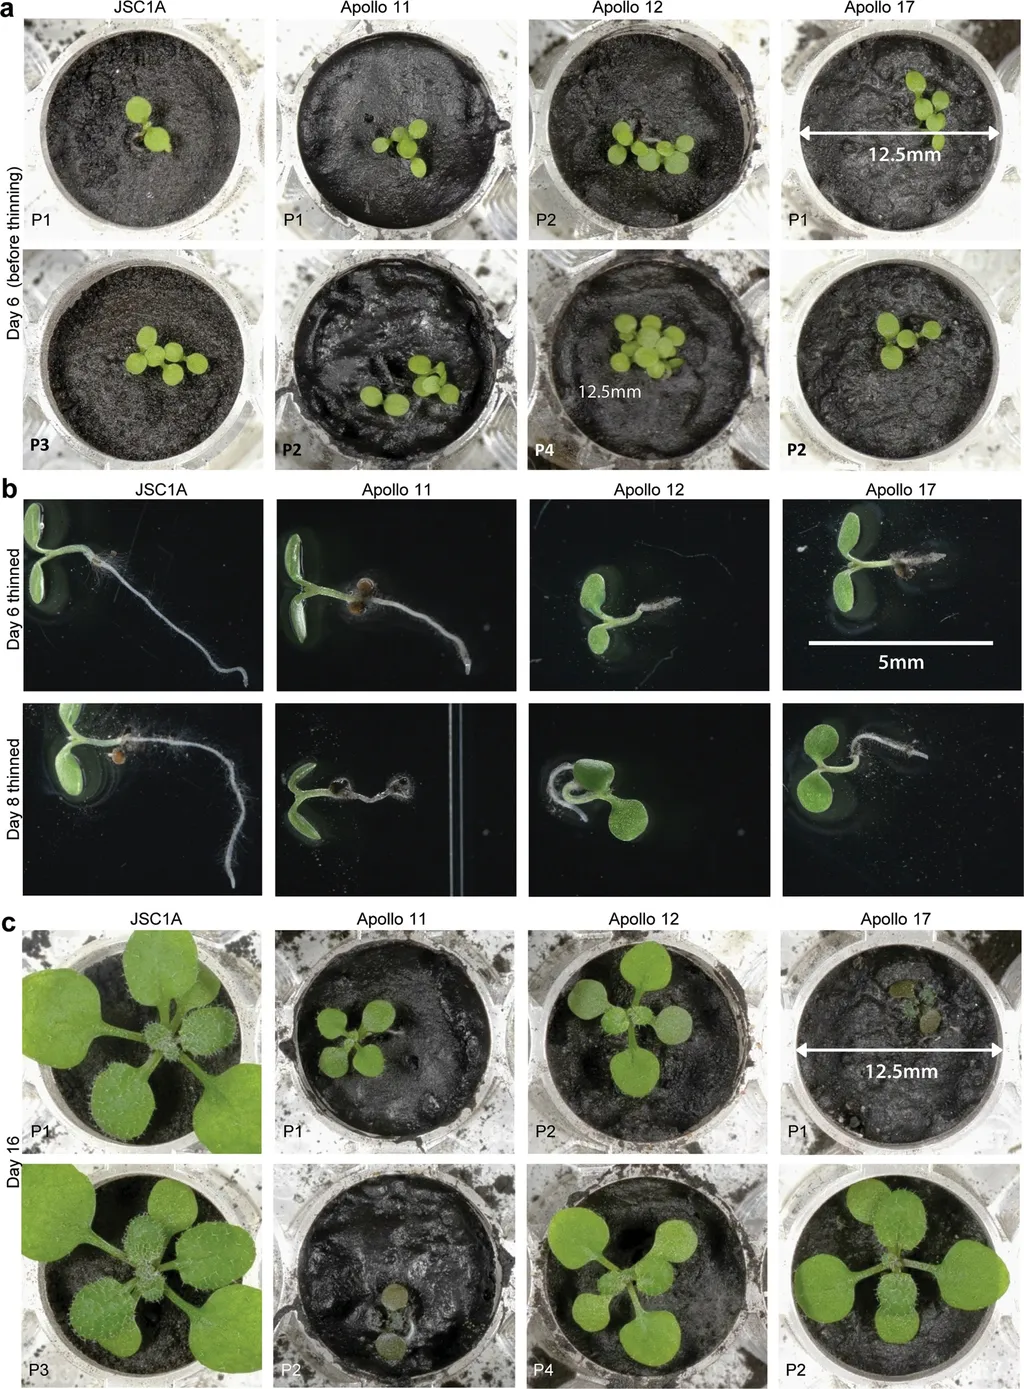 Germinação e desenvolvimento das sementes durante o experimento (Imagem: Reprodução/Anna-Lisa Paul et al.)